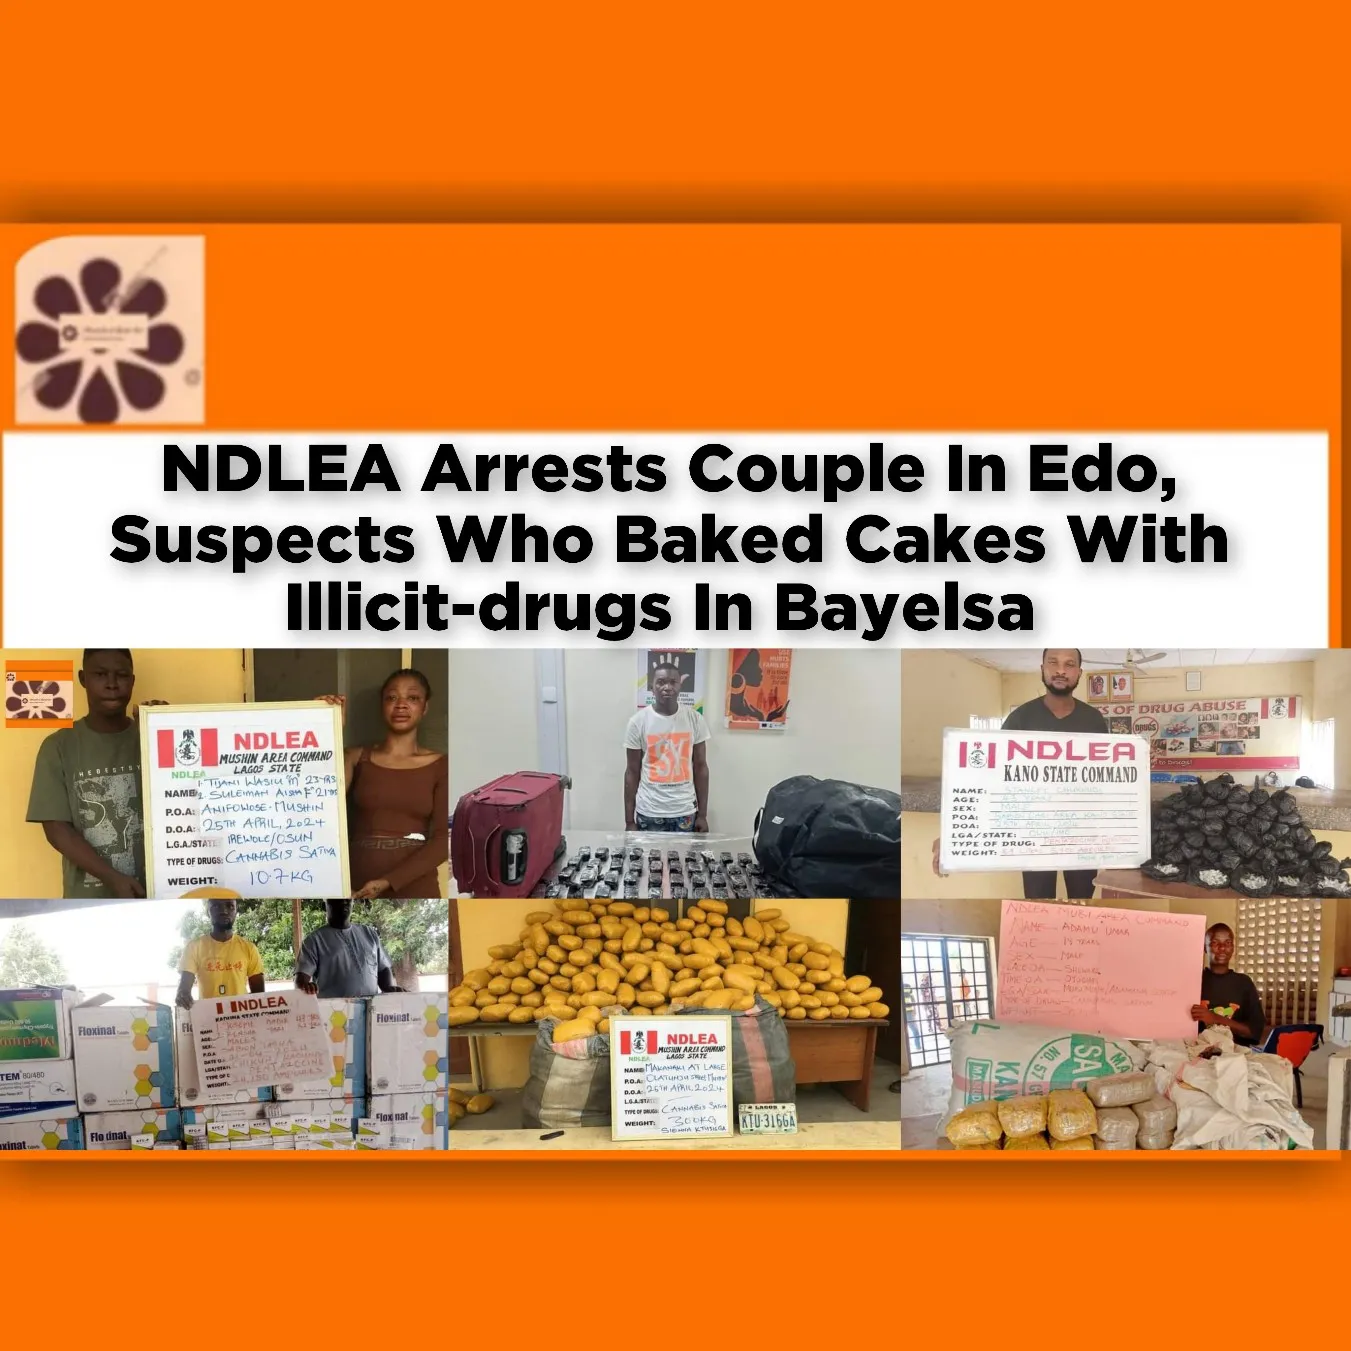 NDLEA Arrests Couple In Edo, Suspects Who Baked Cakes With Illicit-drugs In Bayelsa ~ OsazuwaAkonedo #Ekeututu